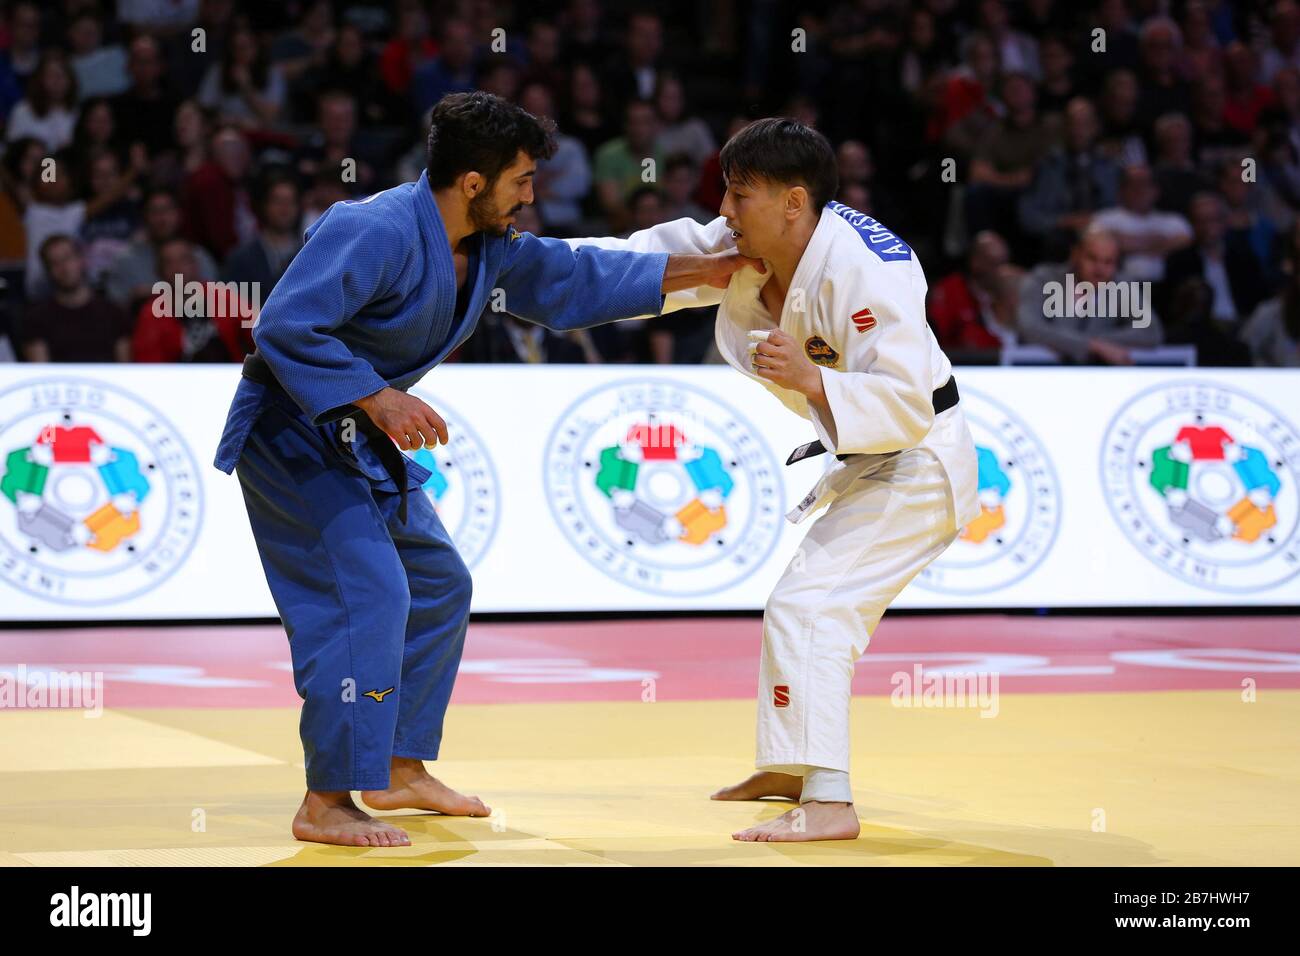 Paris, France - 08 février 2020: Mirhac Akkus pour la Turquie (bleu) contre Amartuvshin Dashdavaa pour la Mongolie (blanc), hommes - 60 kg, médaille de bronze Match (crédit: Mickael Chavet) Banque D'Images